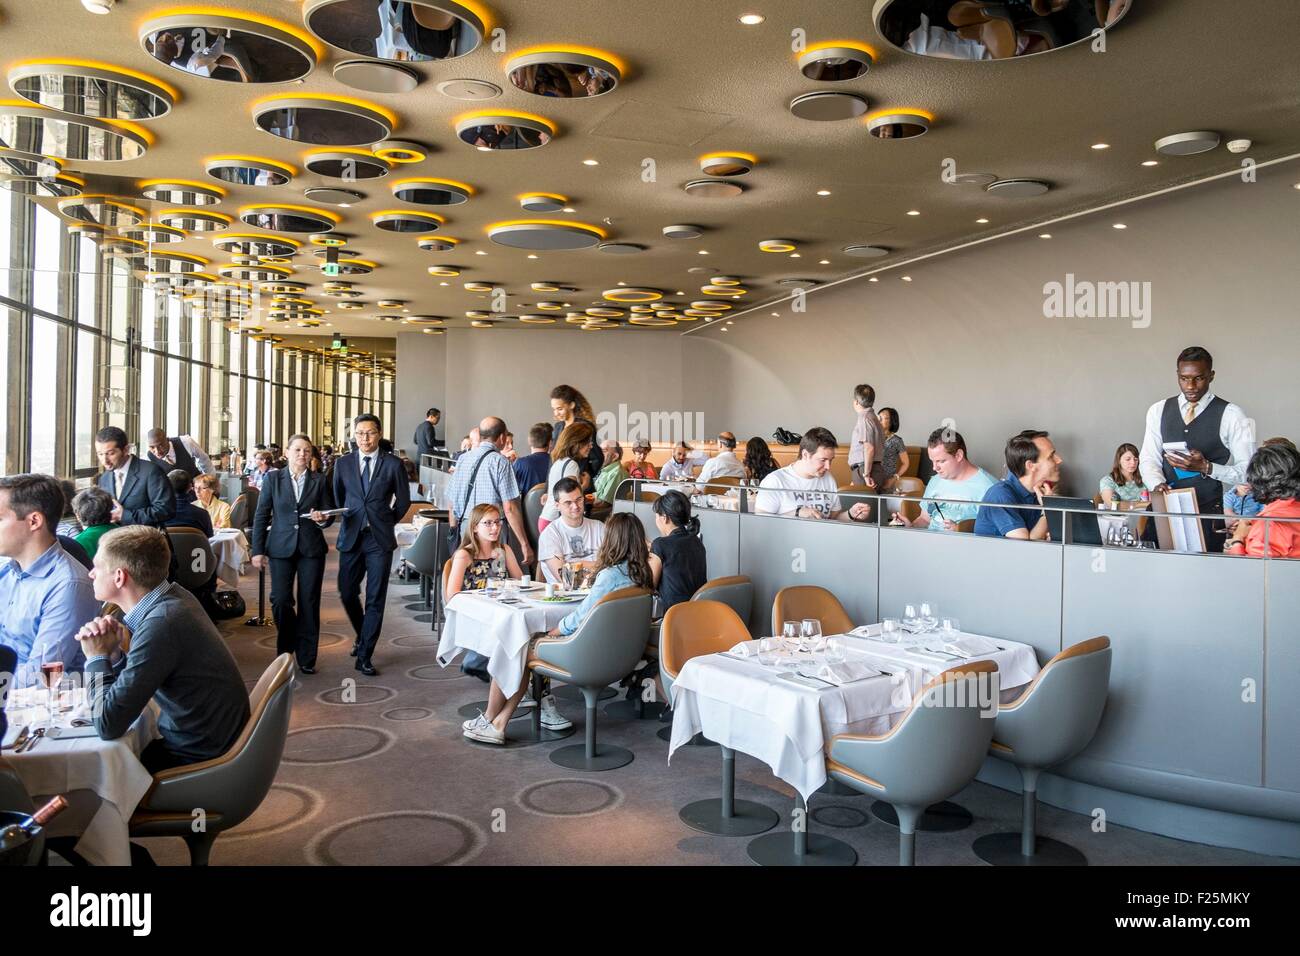 Ciel de paris restaurant hi-res stock photography and images - Alamy